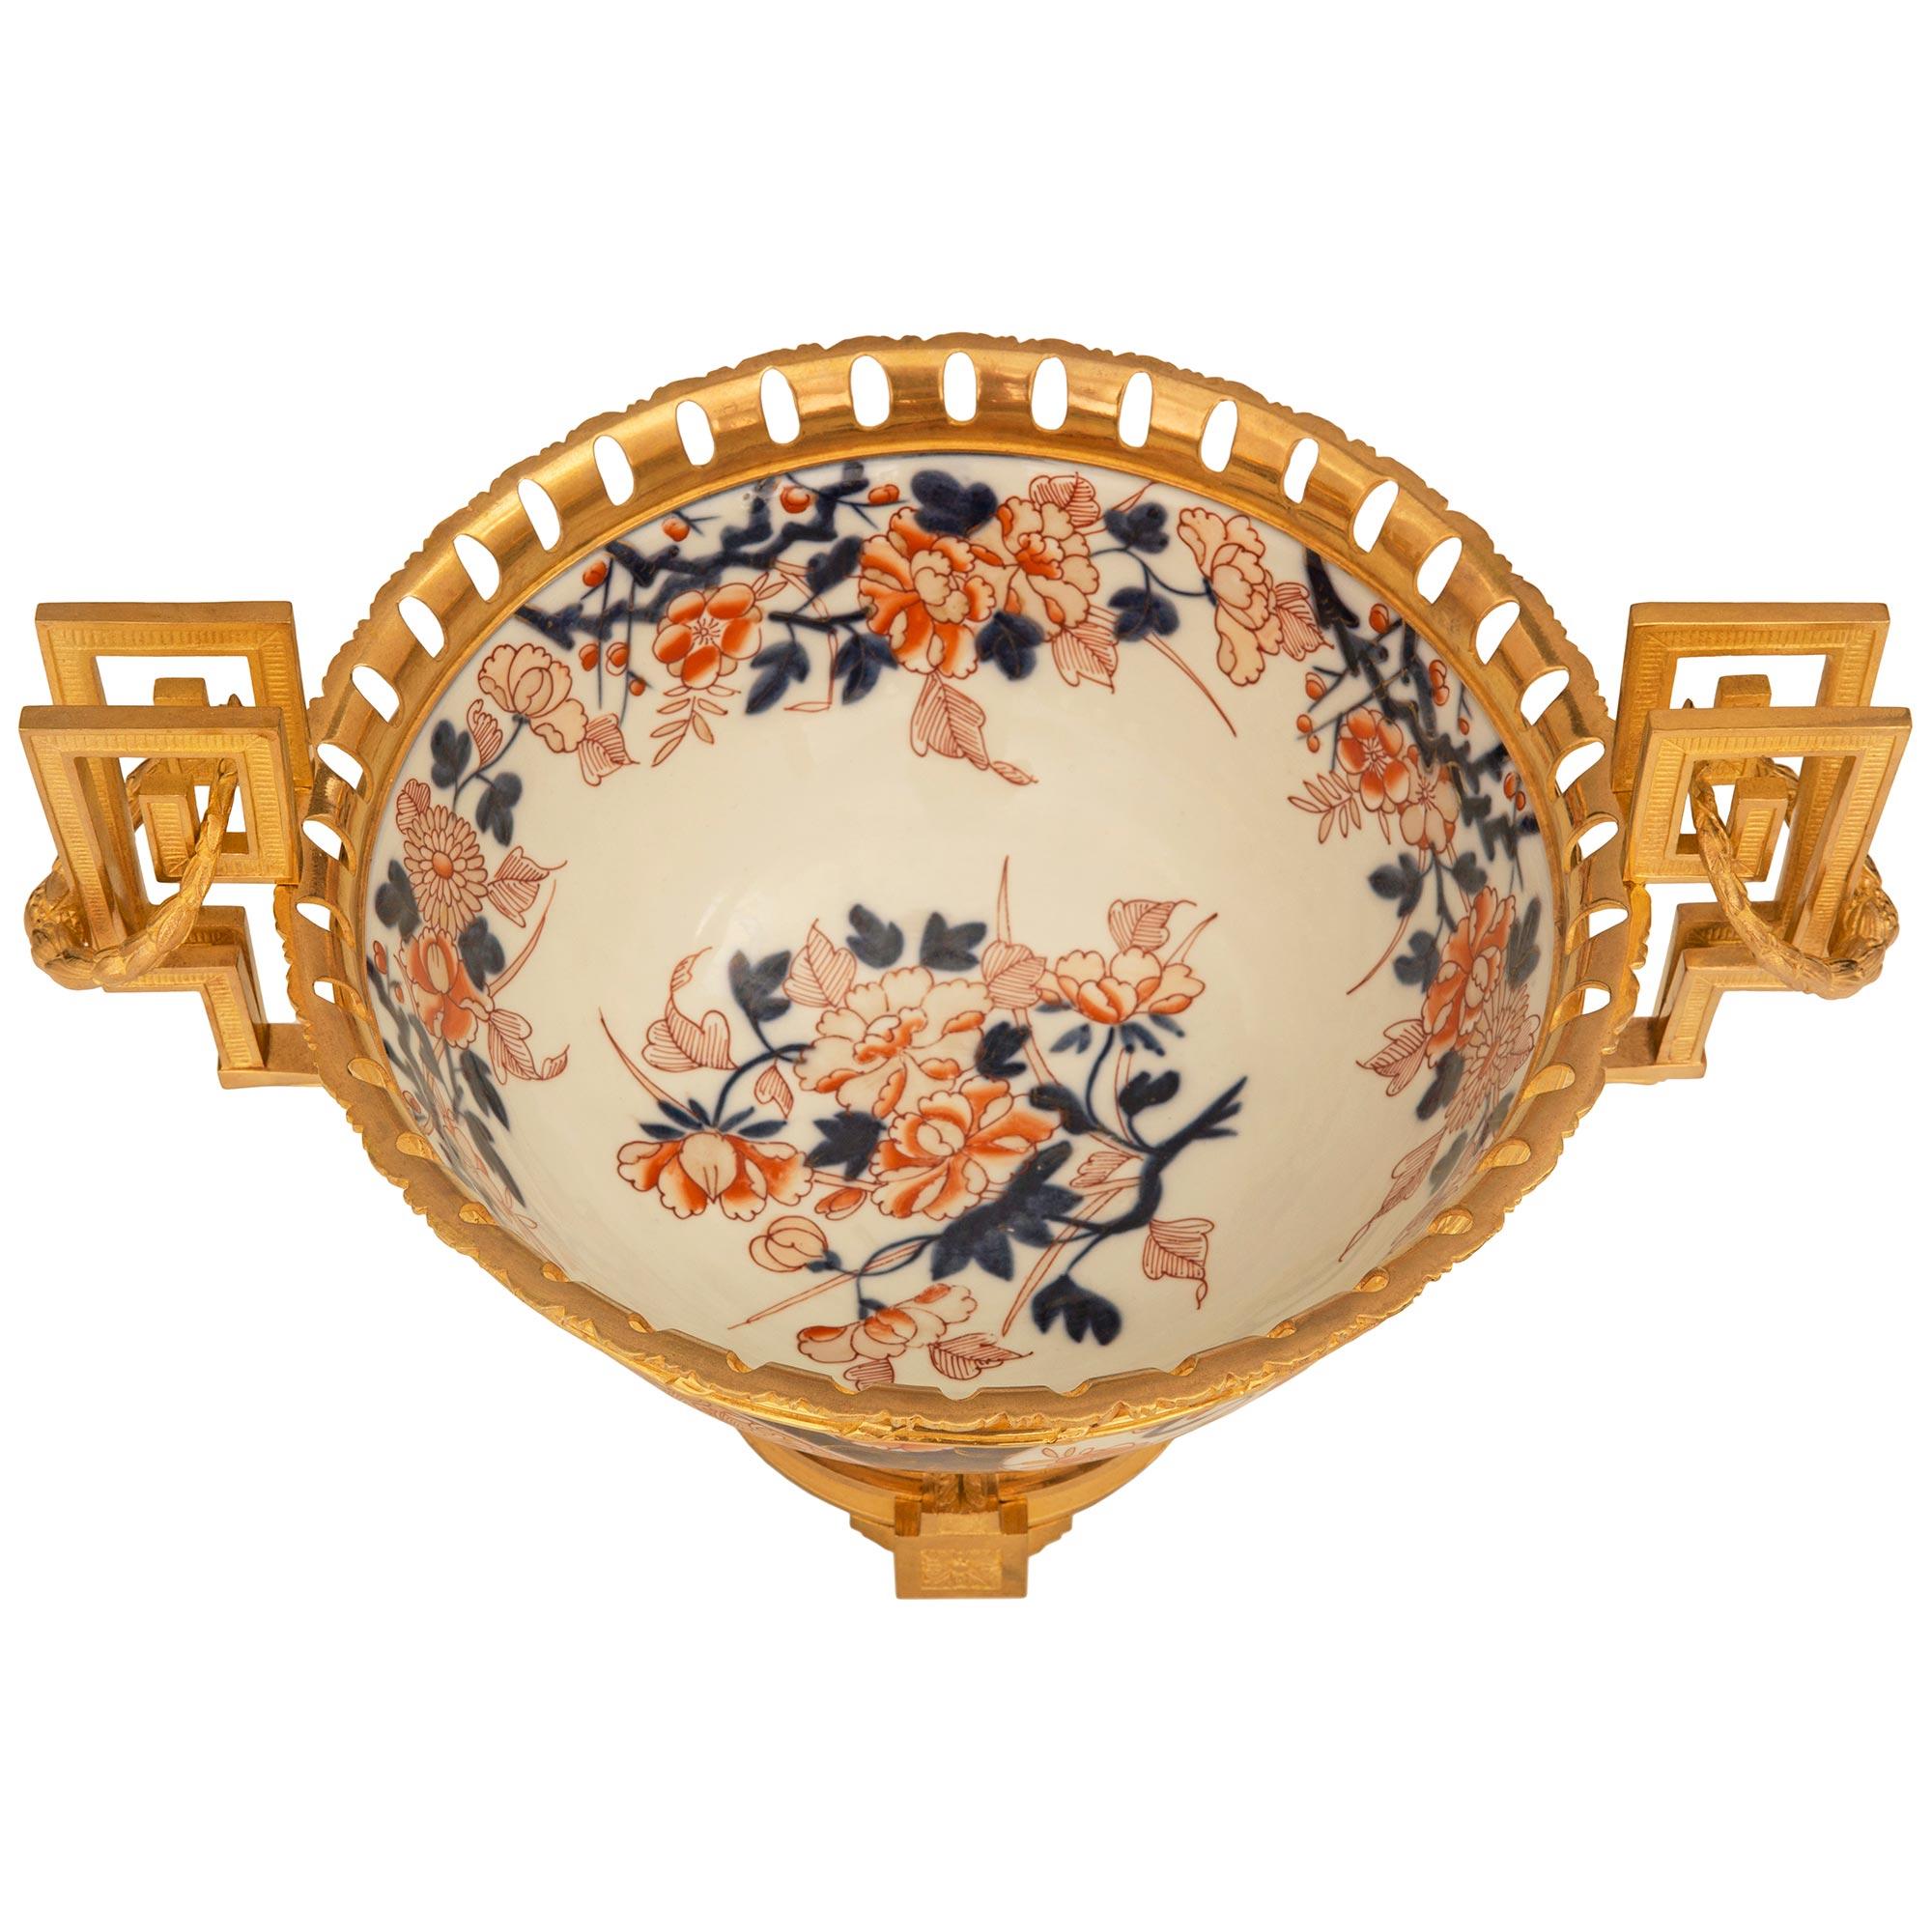 Ein eleganter japanischer Tafelaufsatz aus Imari-Porzellan und Ormolu aus dem 19. Jahrhundert. Der Tafelaufsatz steht auf einem schönen französischen Ormolu-Sockel im Stil Louis XVI mit vier Blockstützen und reich ziselierten zentralen Rosetten. Die